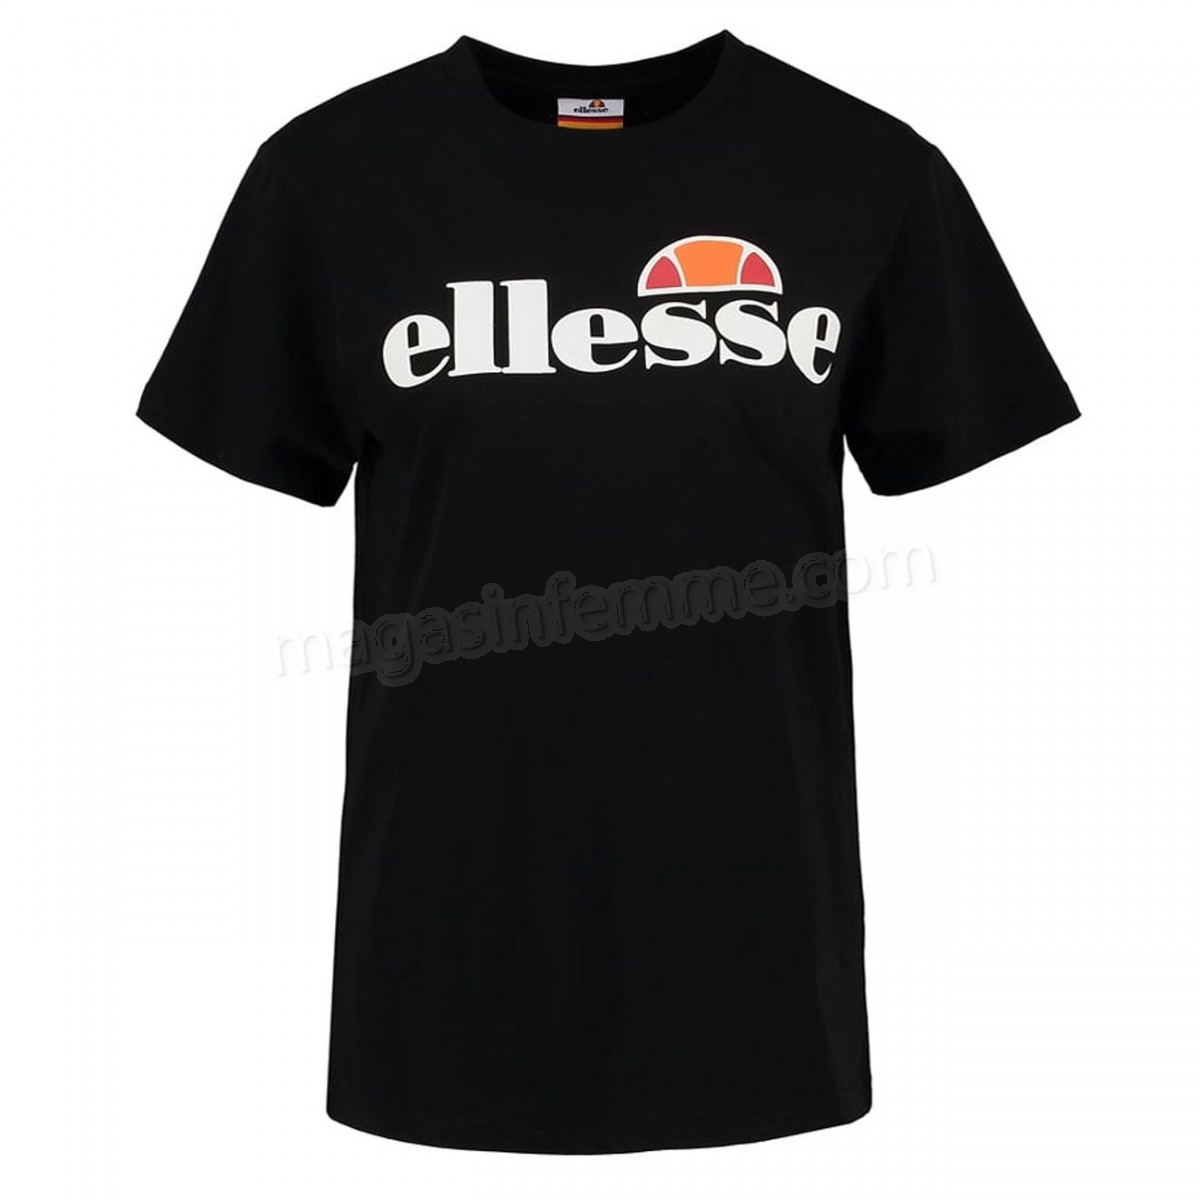 Ellesse-Athlétisme femme ELLESSE Ellesse Heritage Albany Tee-shirt Tee-shirt Mode Femme Pour Femmes - Noir - UK 12 en solde - -0